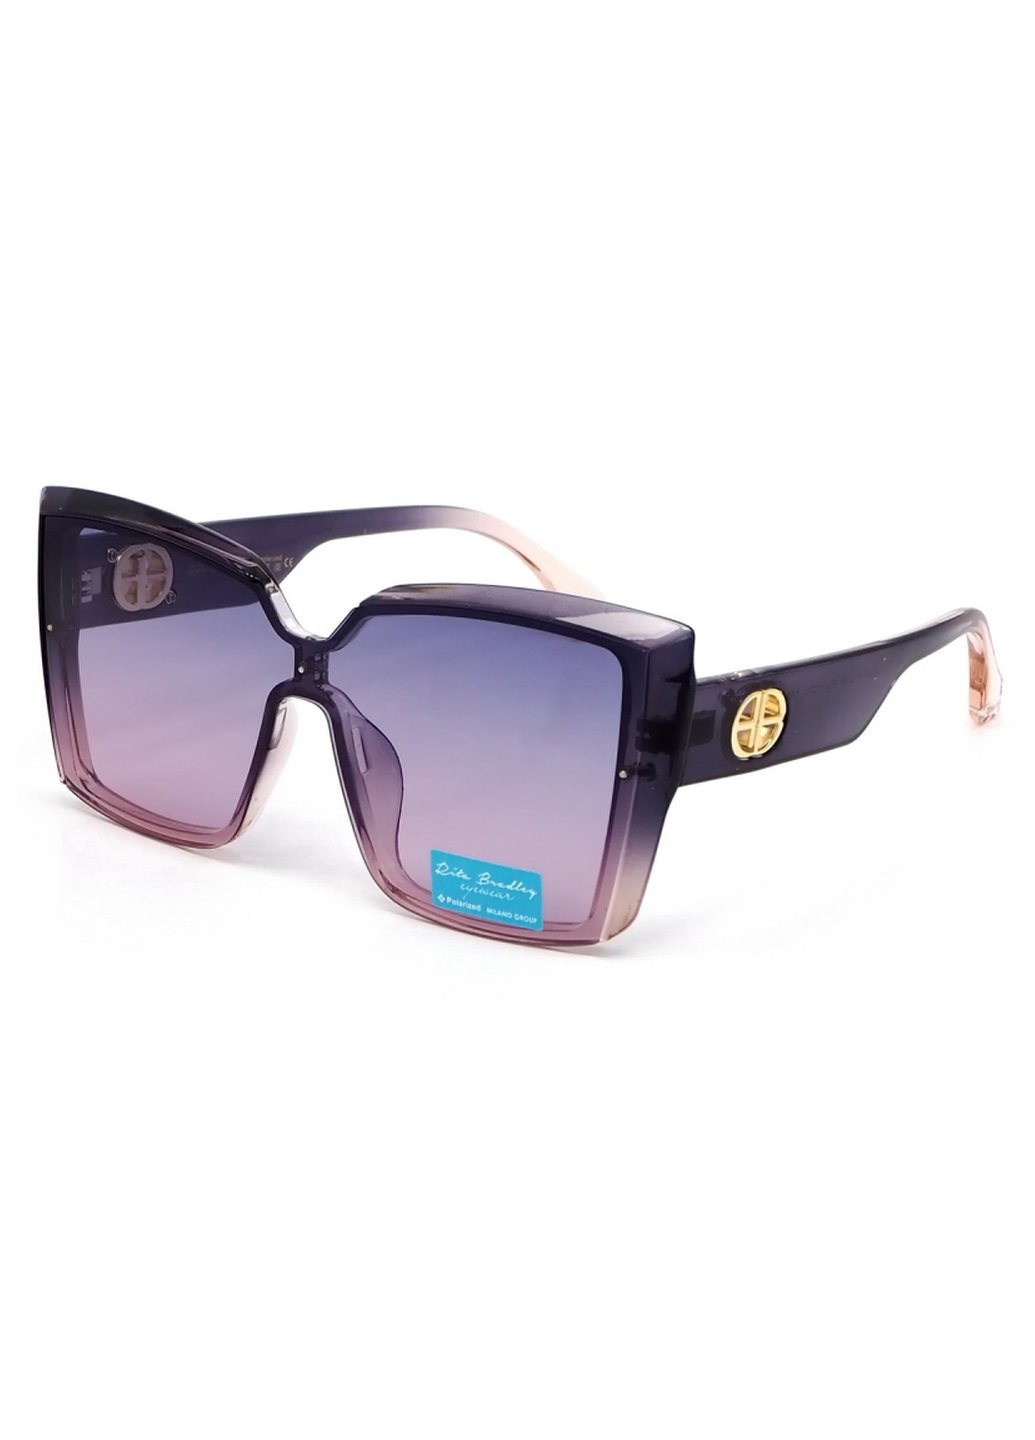 Купить Женские солнцезащитные очки Rita Bradley с поляризацией RB725 112050 в интернет-магазине